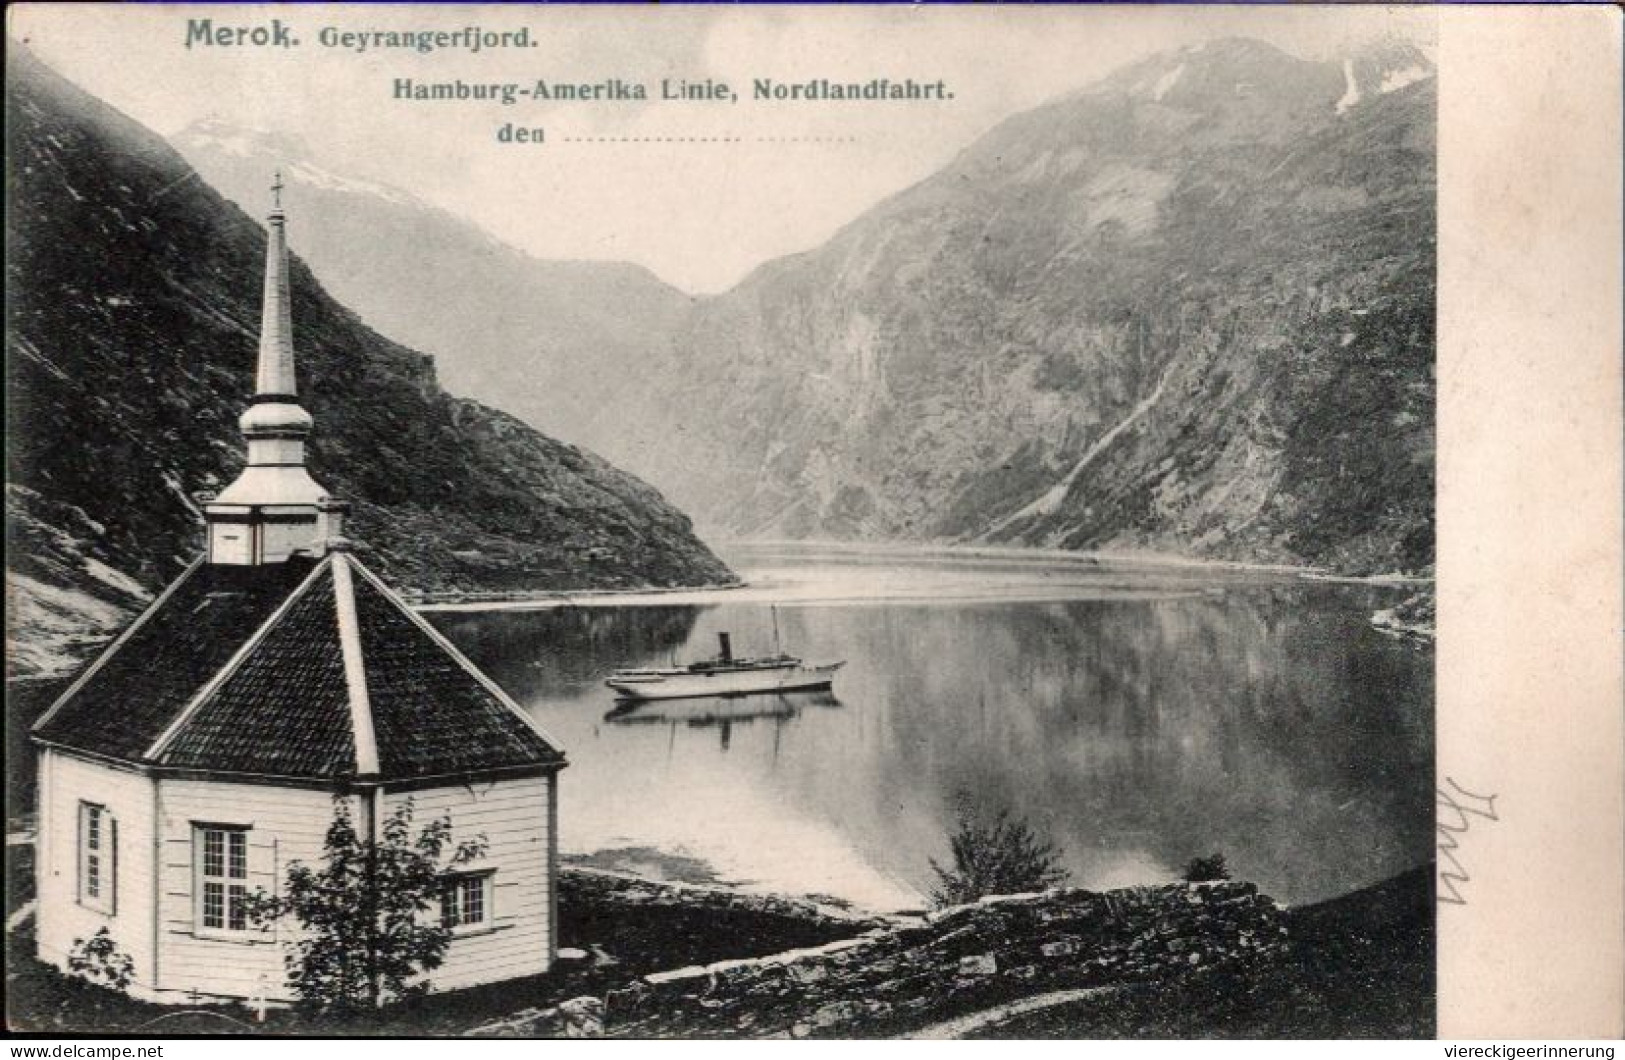 ! Alte Ansichtskarte Merok, Geyrangerfjord, Hamburg Amerika Linie, Nordlandfahrt, Norwegen, Norge, Norway, Norvege - Norway